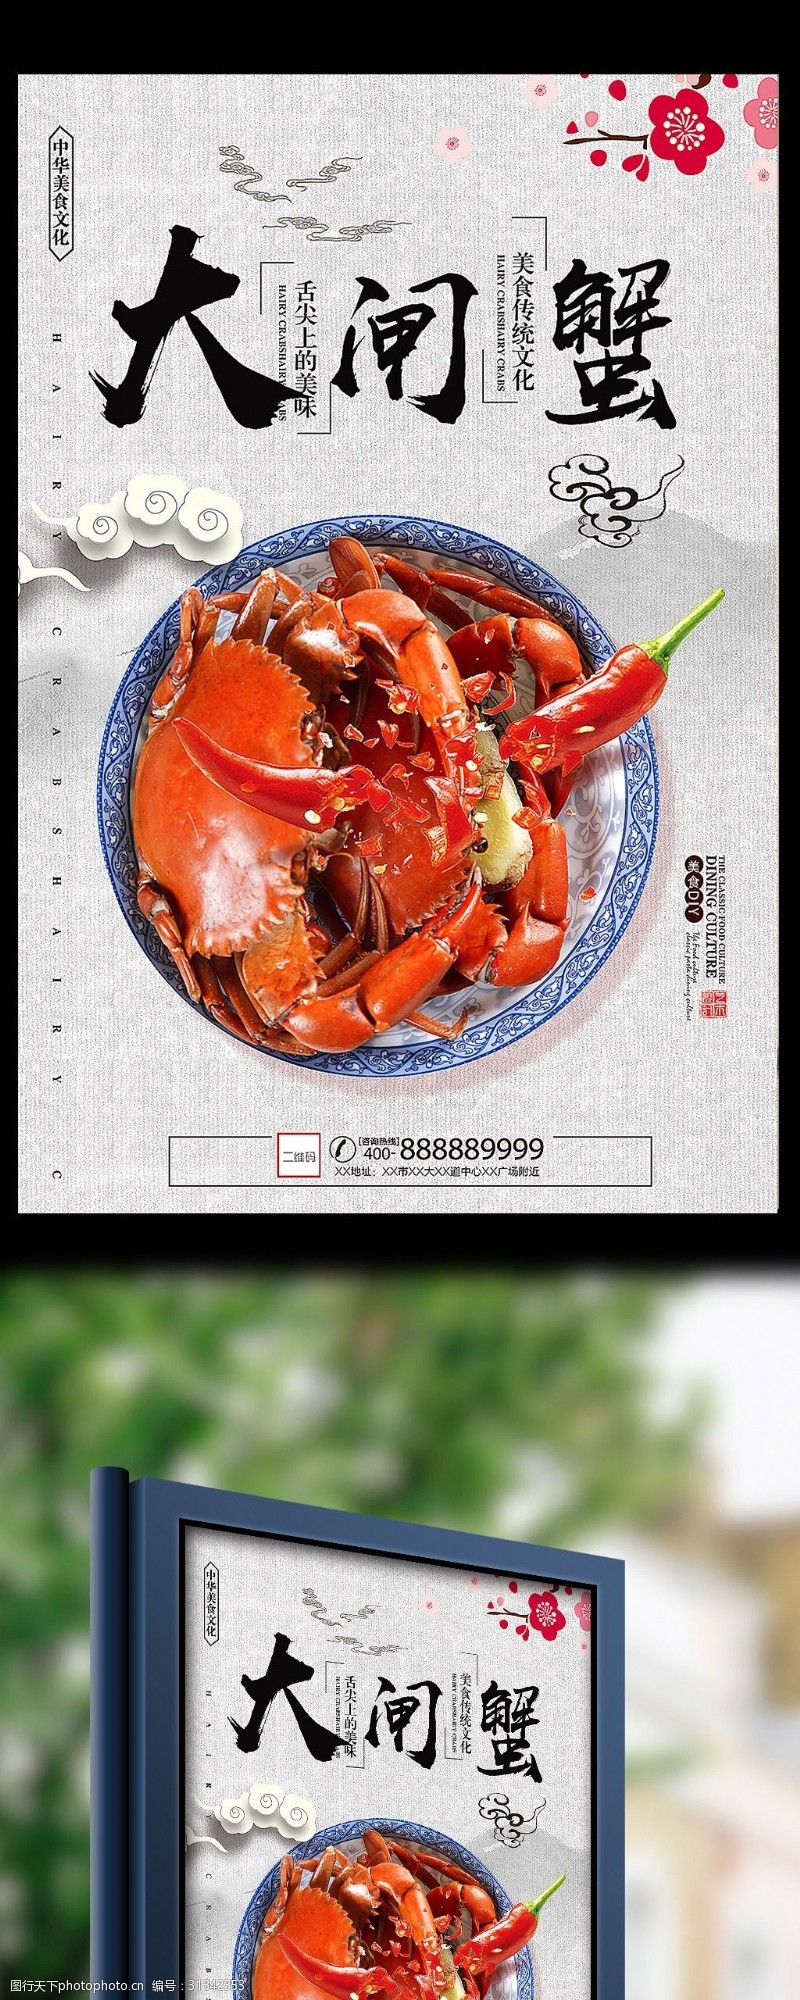 螃蟹宣传大闸蟹宣传促销海报